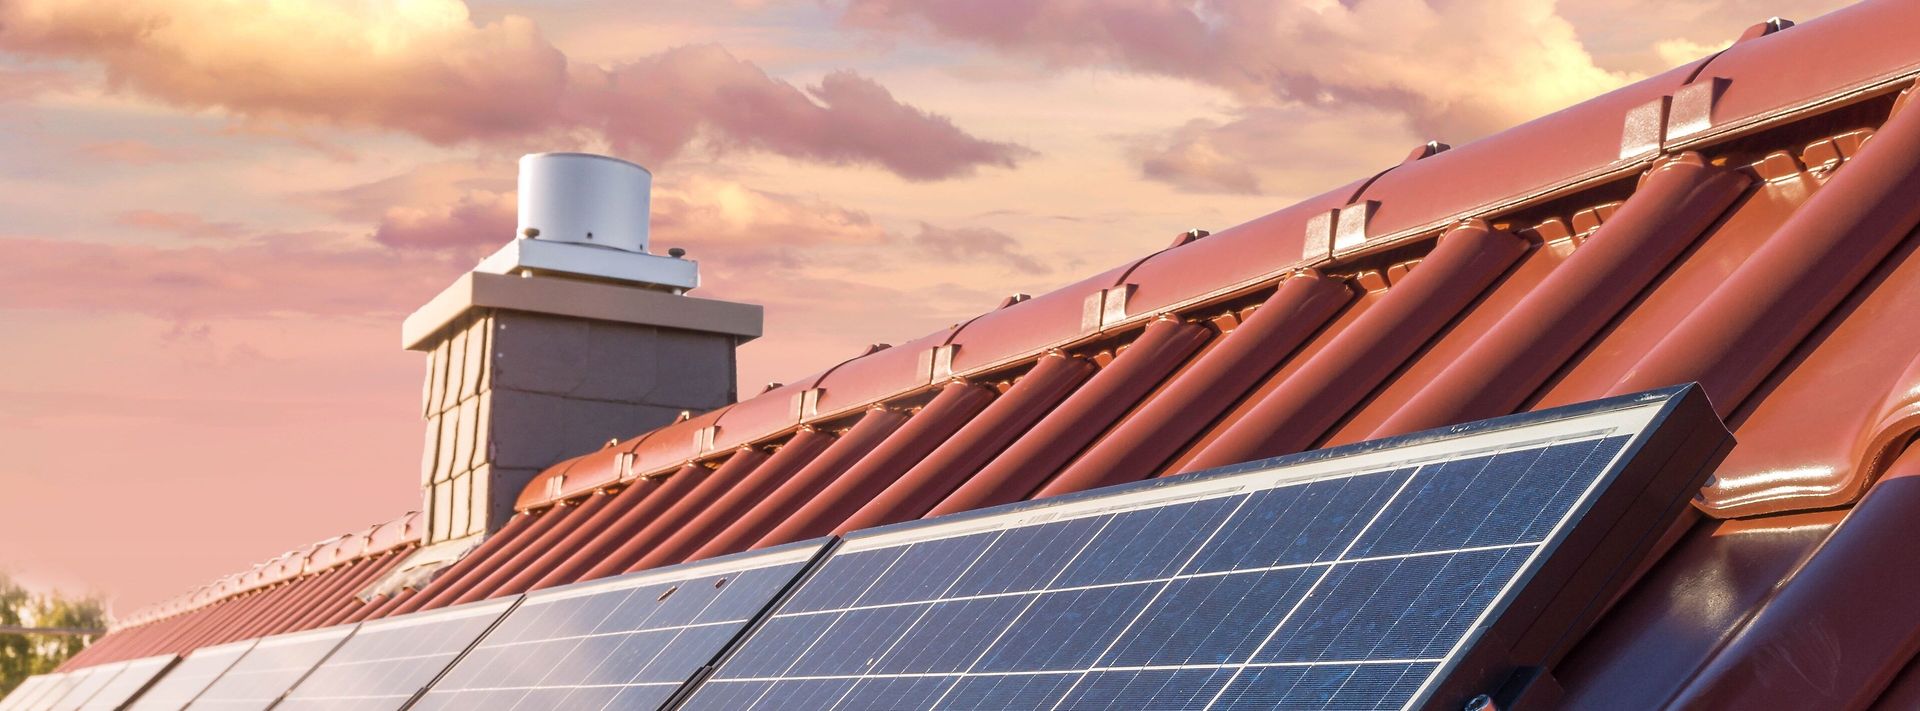 Solarmodule einer Photovoltaikanlage auf dem Dach